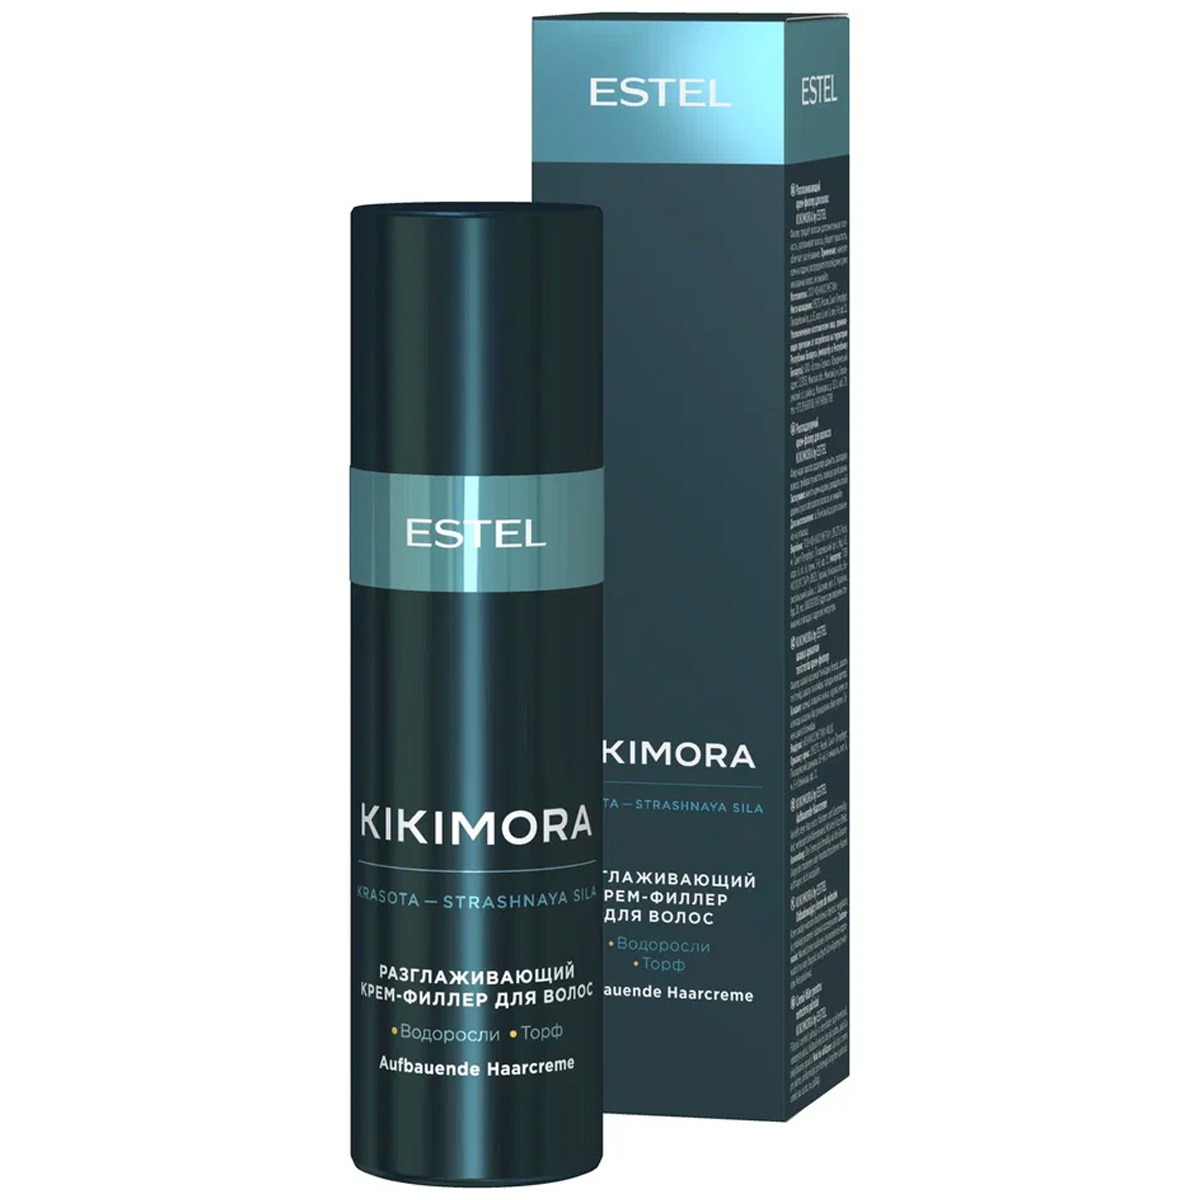 Estel Разглаживающий крем - филлер для волос, 100 мл (Estel, Kikimora) estel набор kikimora